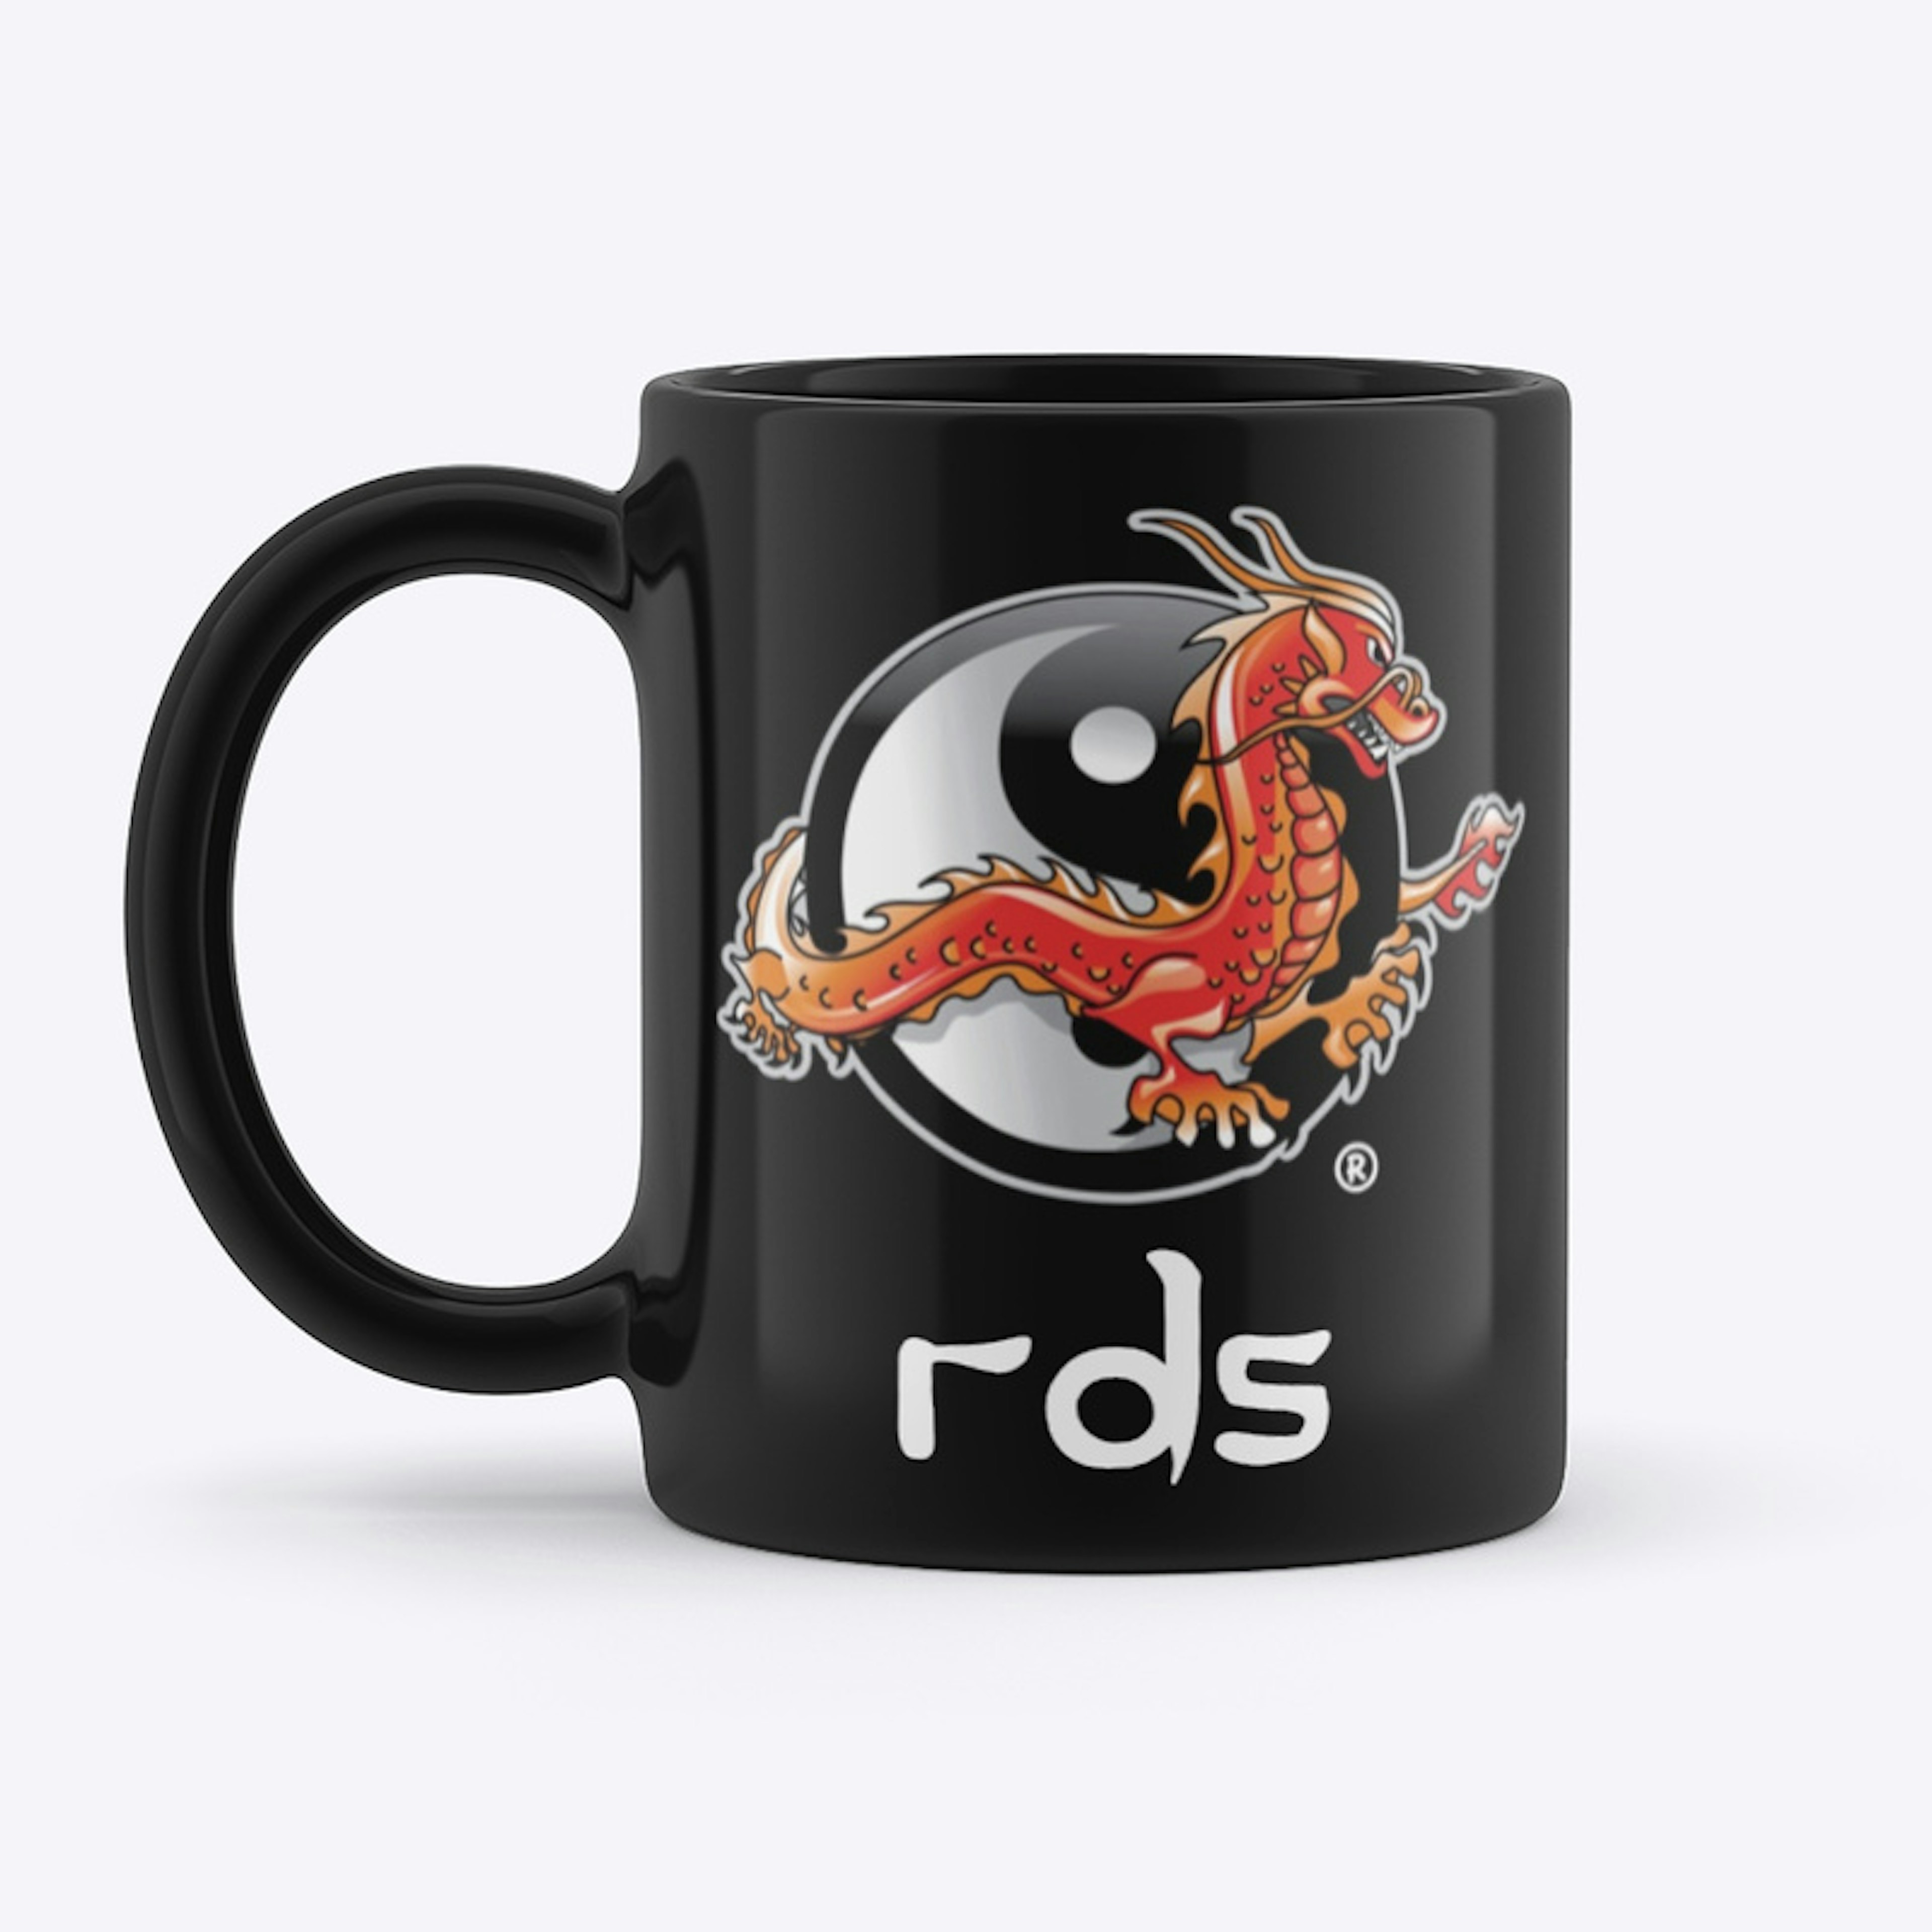 RDS Coffee Mug